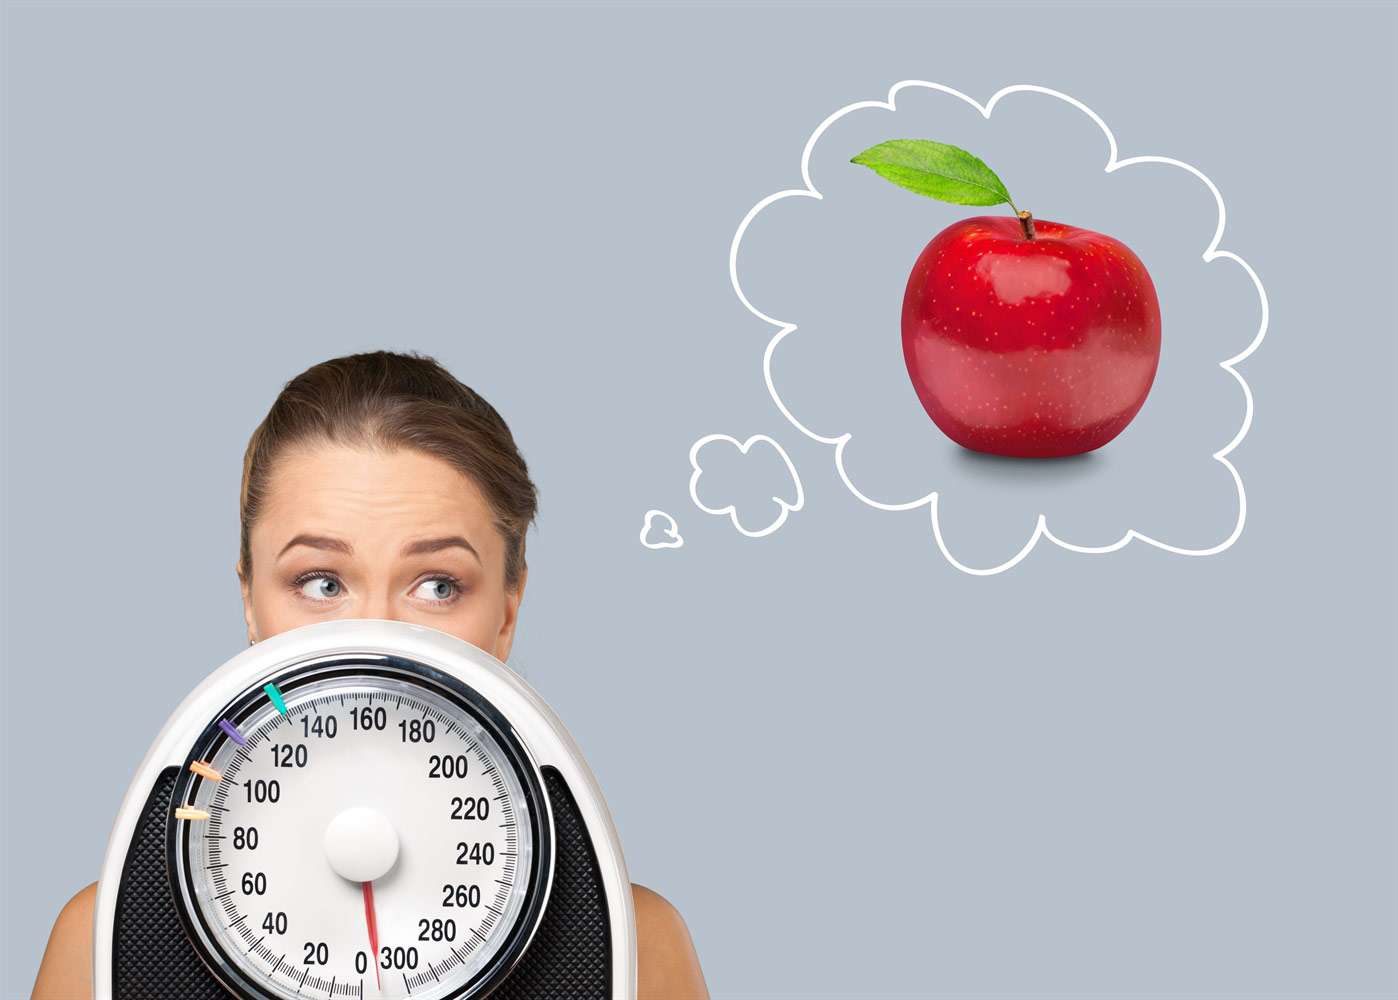 Kiat untuk Diet Sehat Guna Mengontrol Berat Badan Ideal yang Lebih Sehat